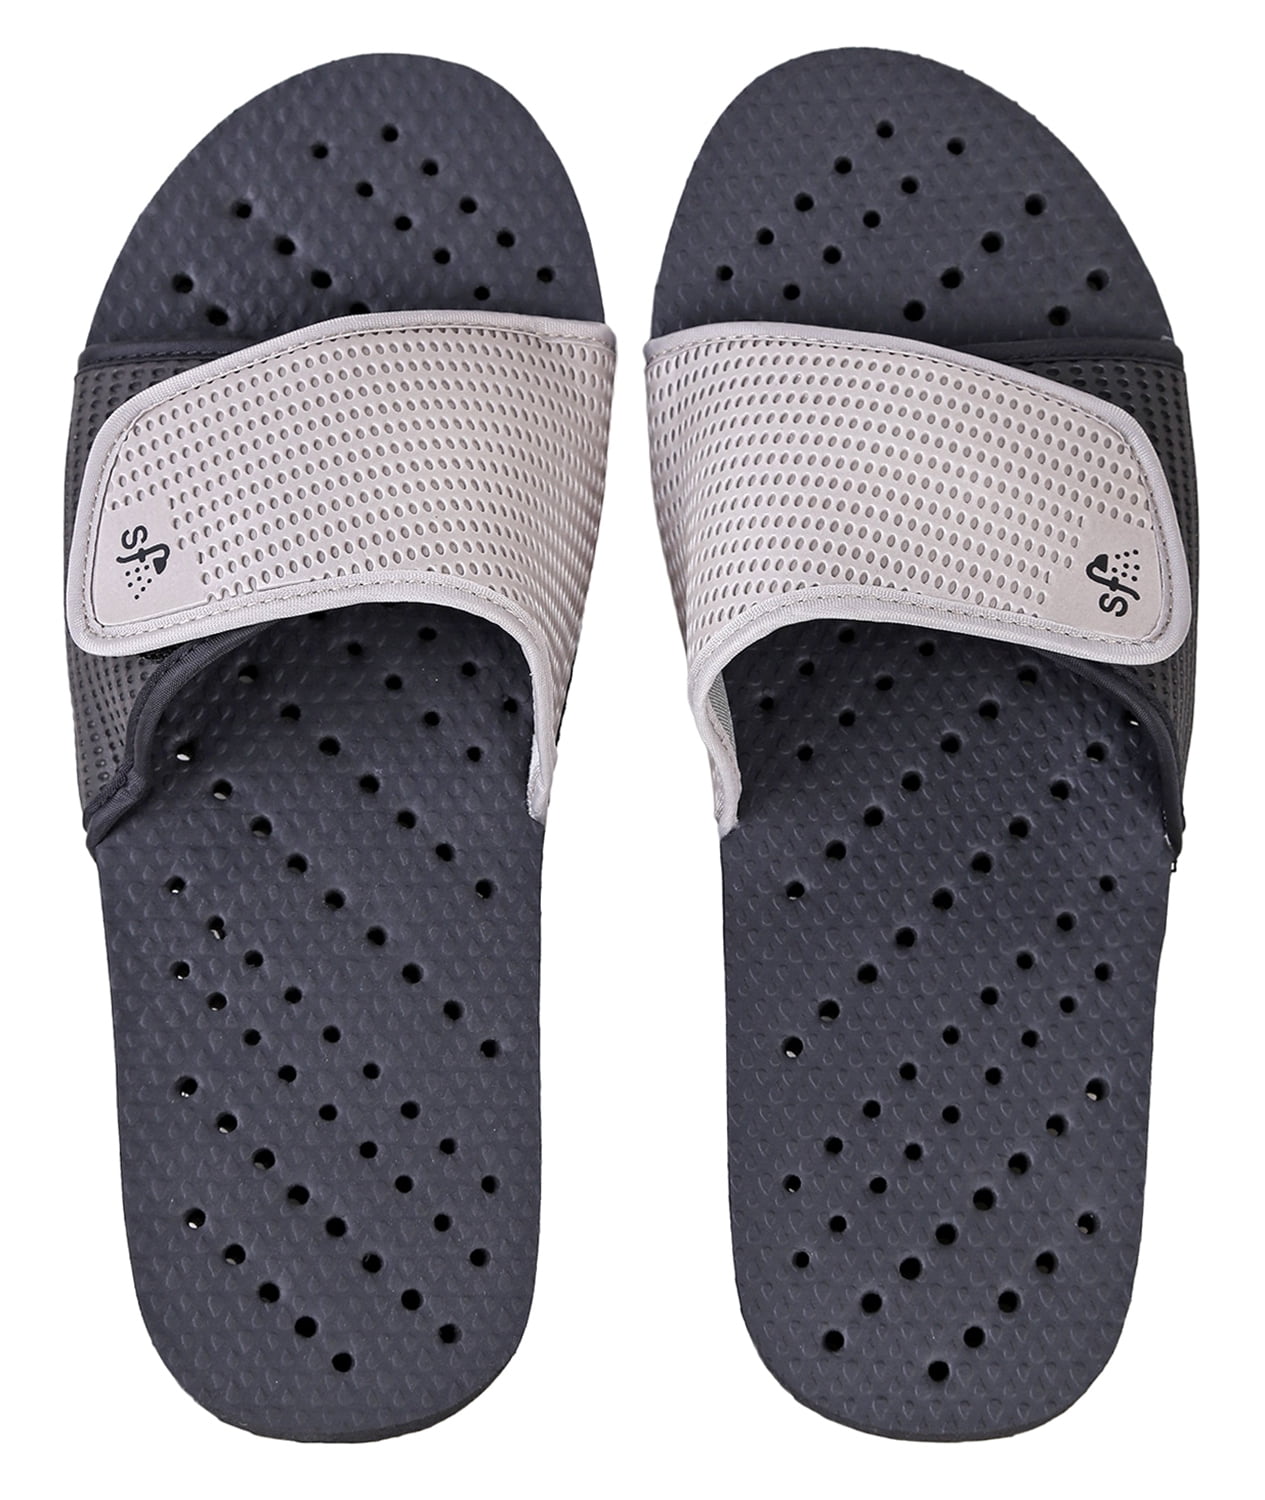 New Mens Slip On Beach Shower Mules Flip Flops pool Sliders sandals Size UK 6-12 